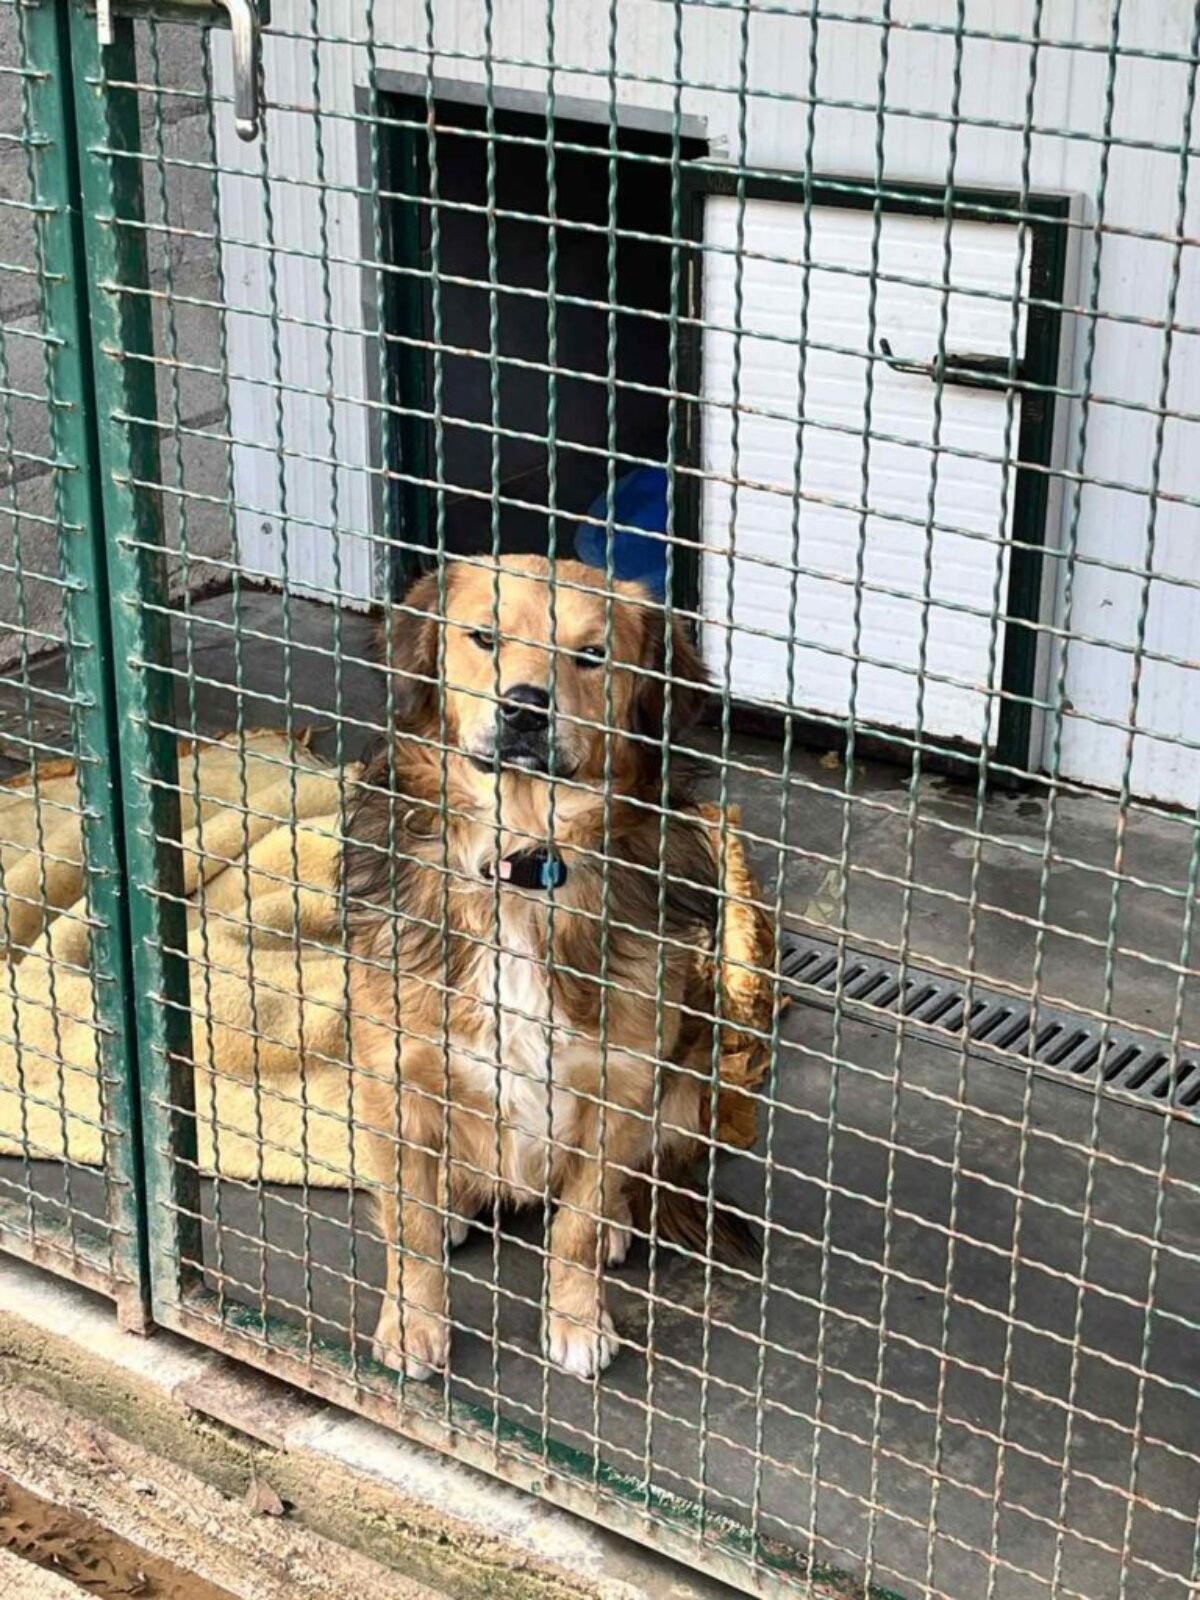 pgz donacija skloniste za pse azil (8)